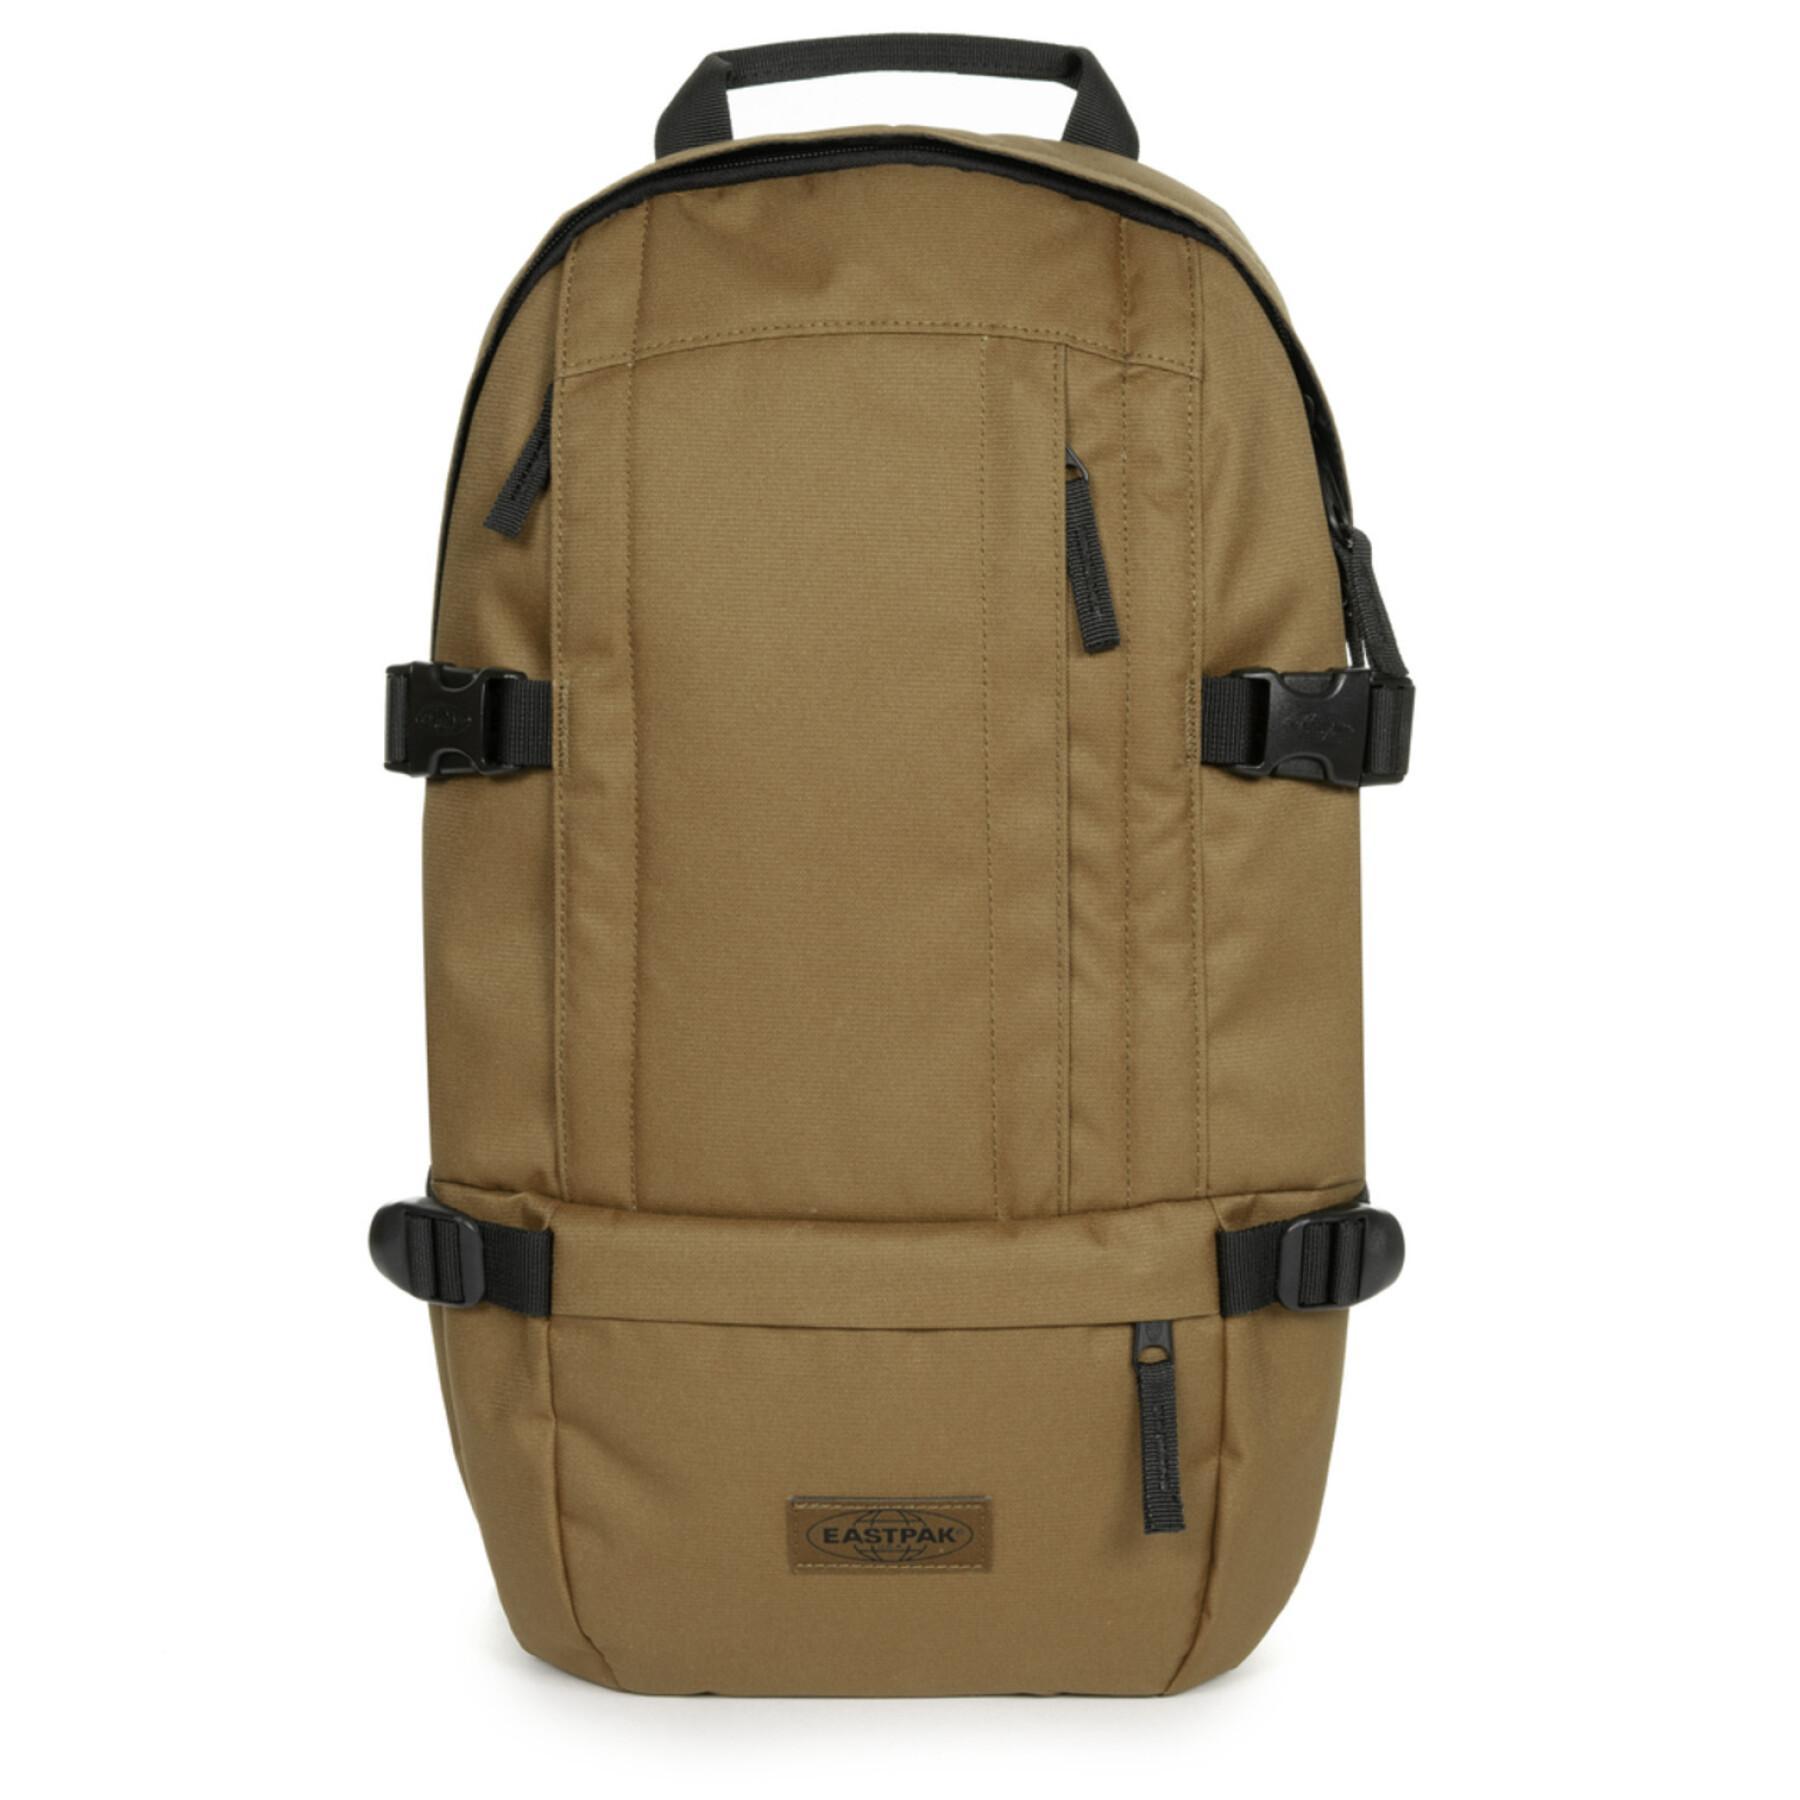 Crimineel waterbestendig wedstrijd Backpack Eastpak Floid - Backpacks - Bags - Equipment